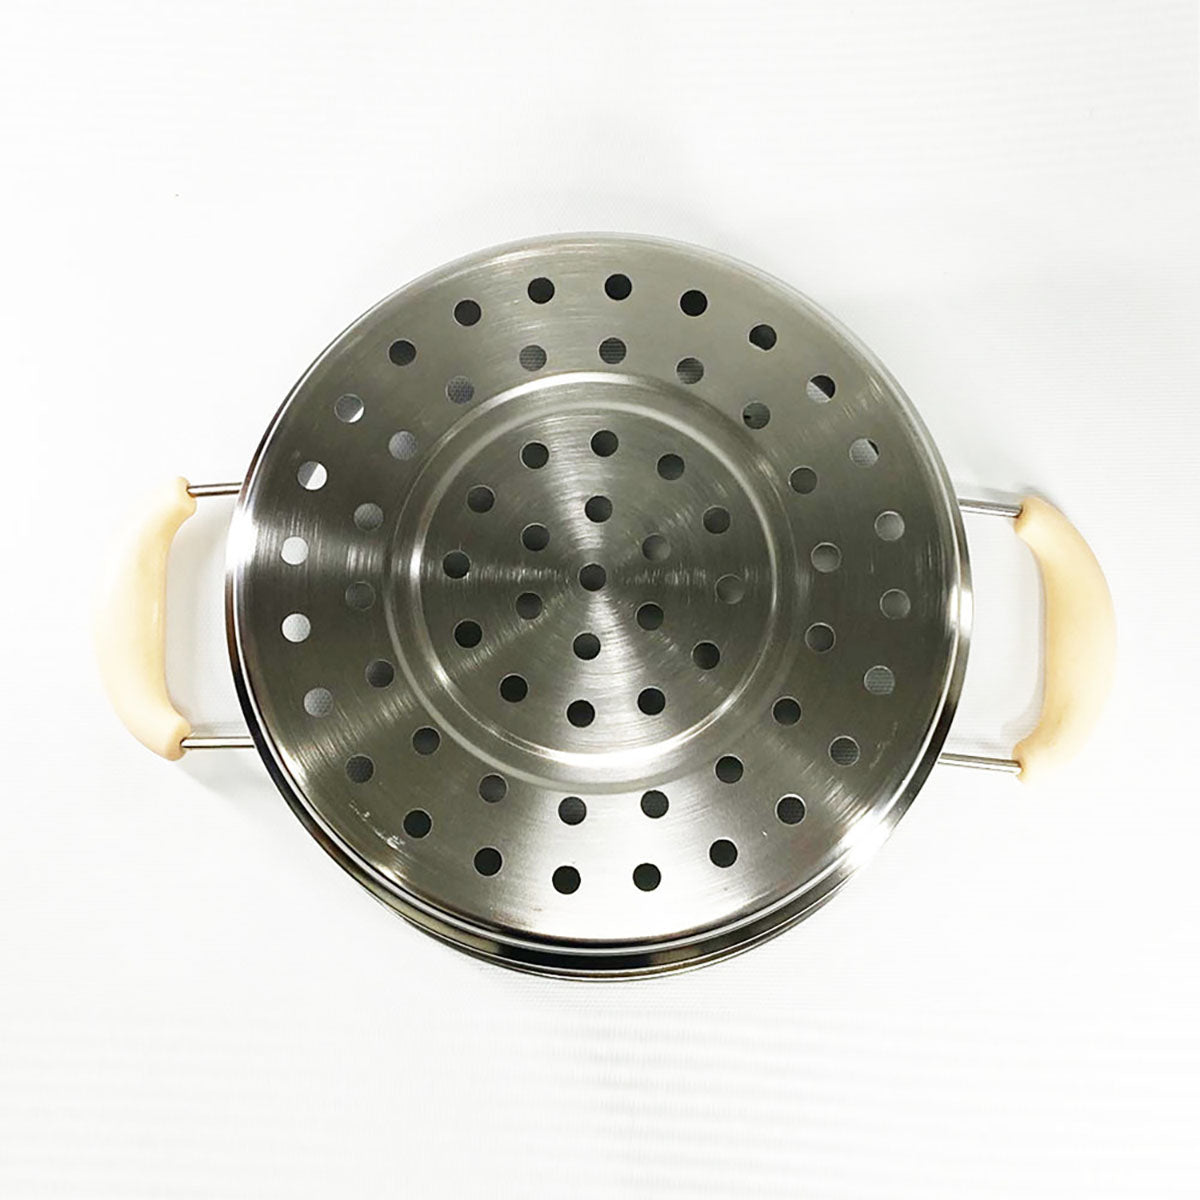 JNC 不銹鋼萬用煮食煲 1.2L - 專用蒸籠